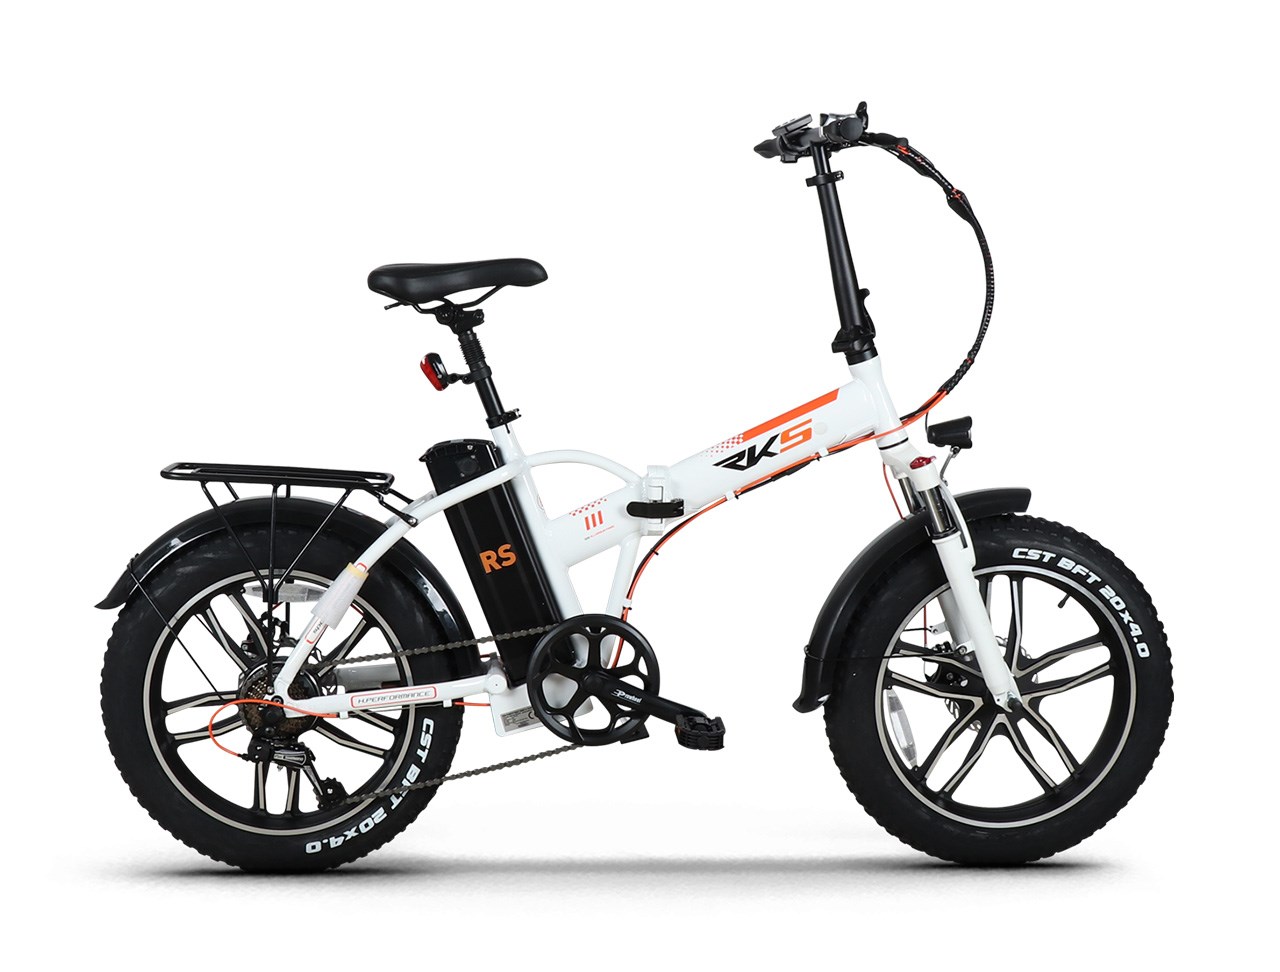 güçlü elektrikli bisiklet Rks Rs-III Pro